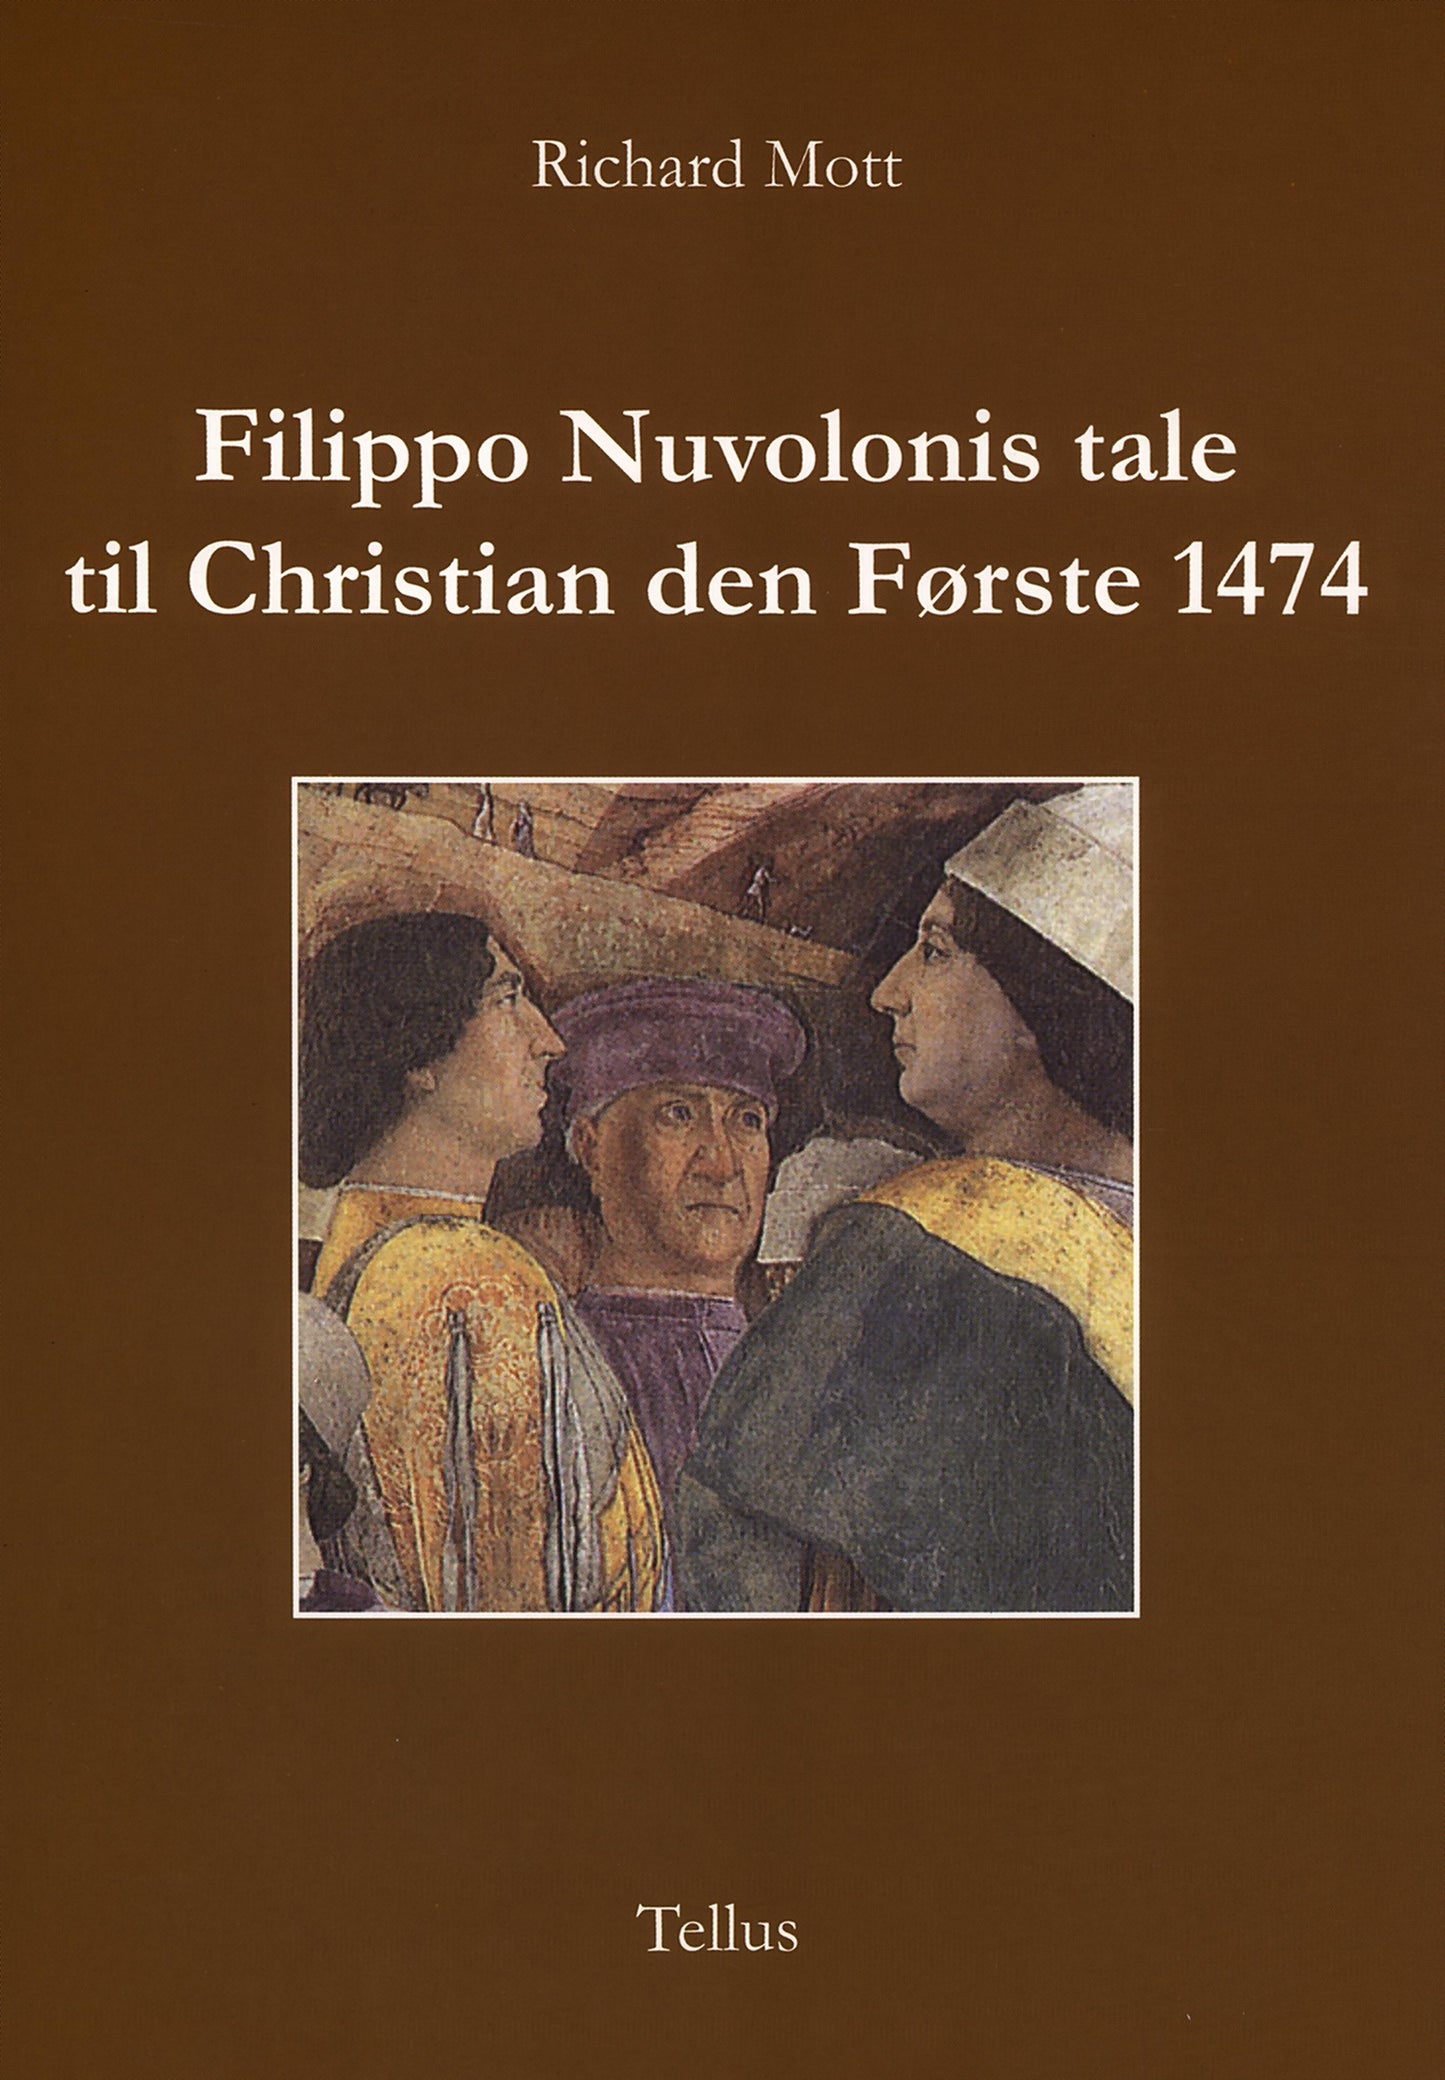 Filippo Nuvolonis tale til Christian den Første 1474